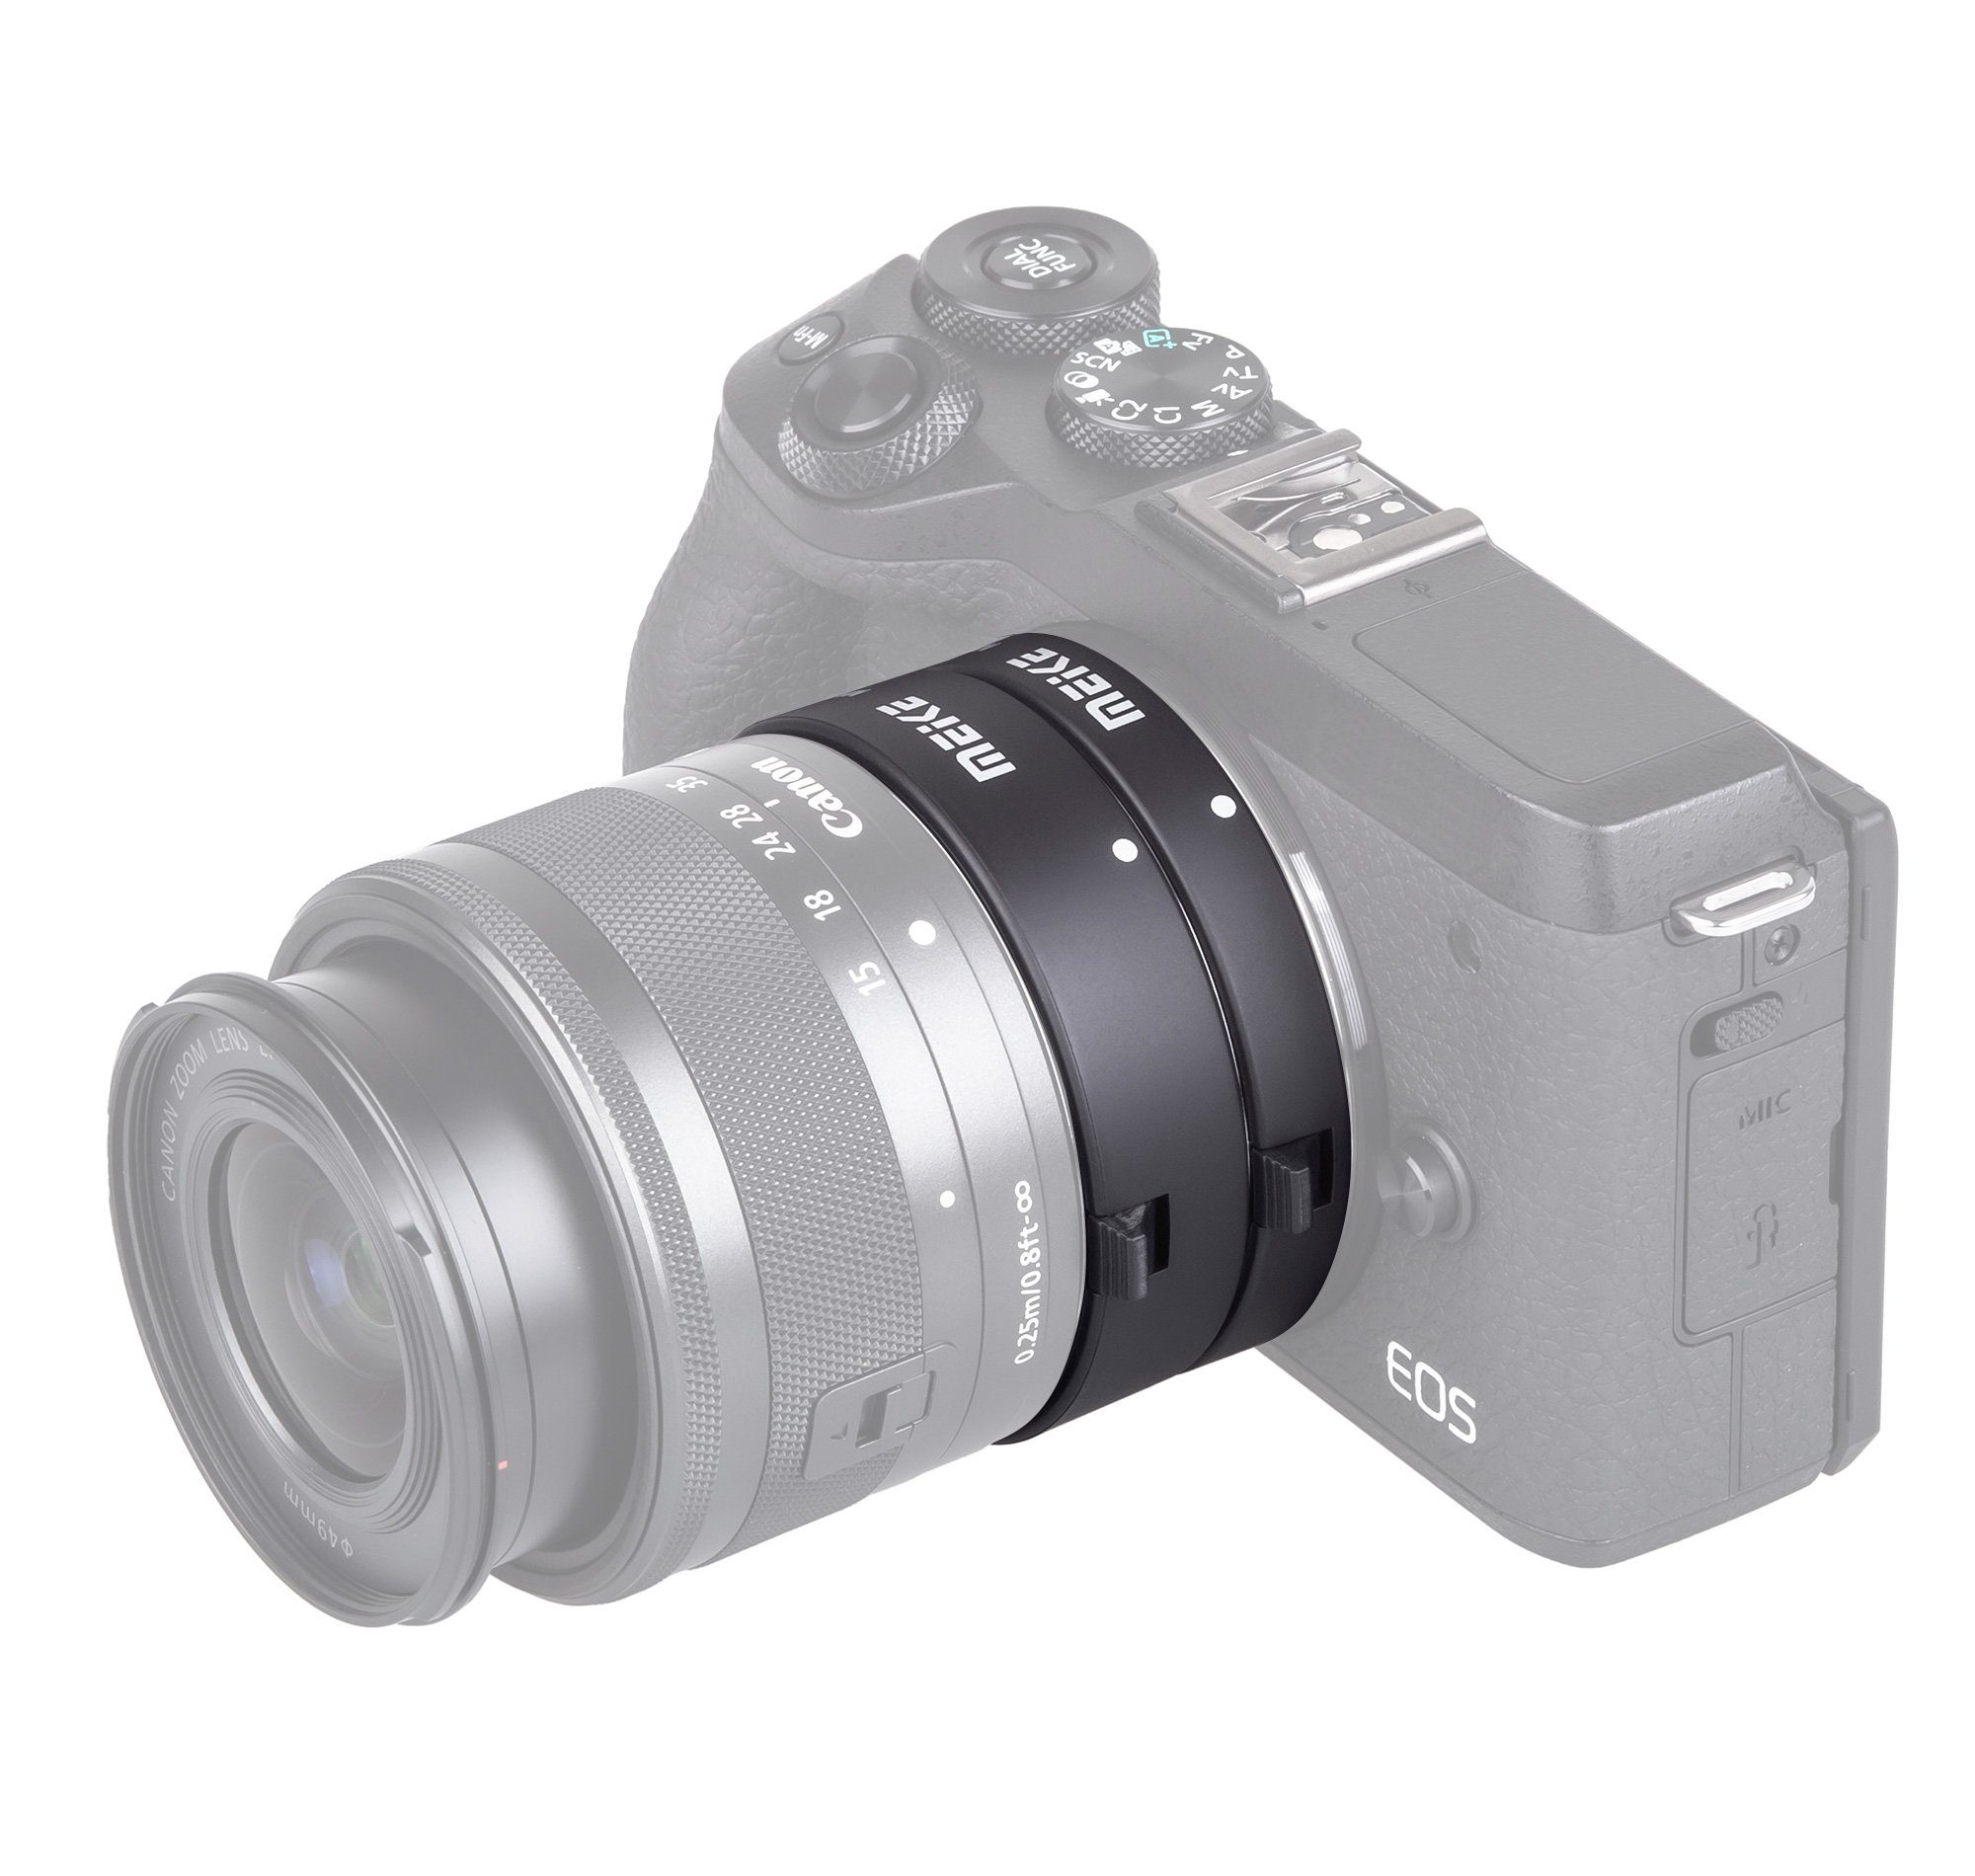 Canon EOS Systemkameras Zwischenringe M Automatik MK-C-AF3A Makro Makroobjektiv Meike für